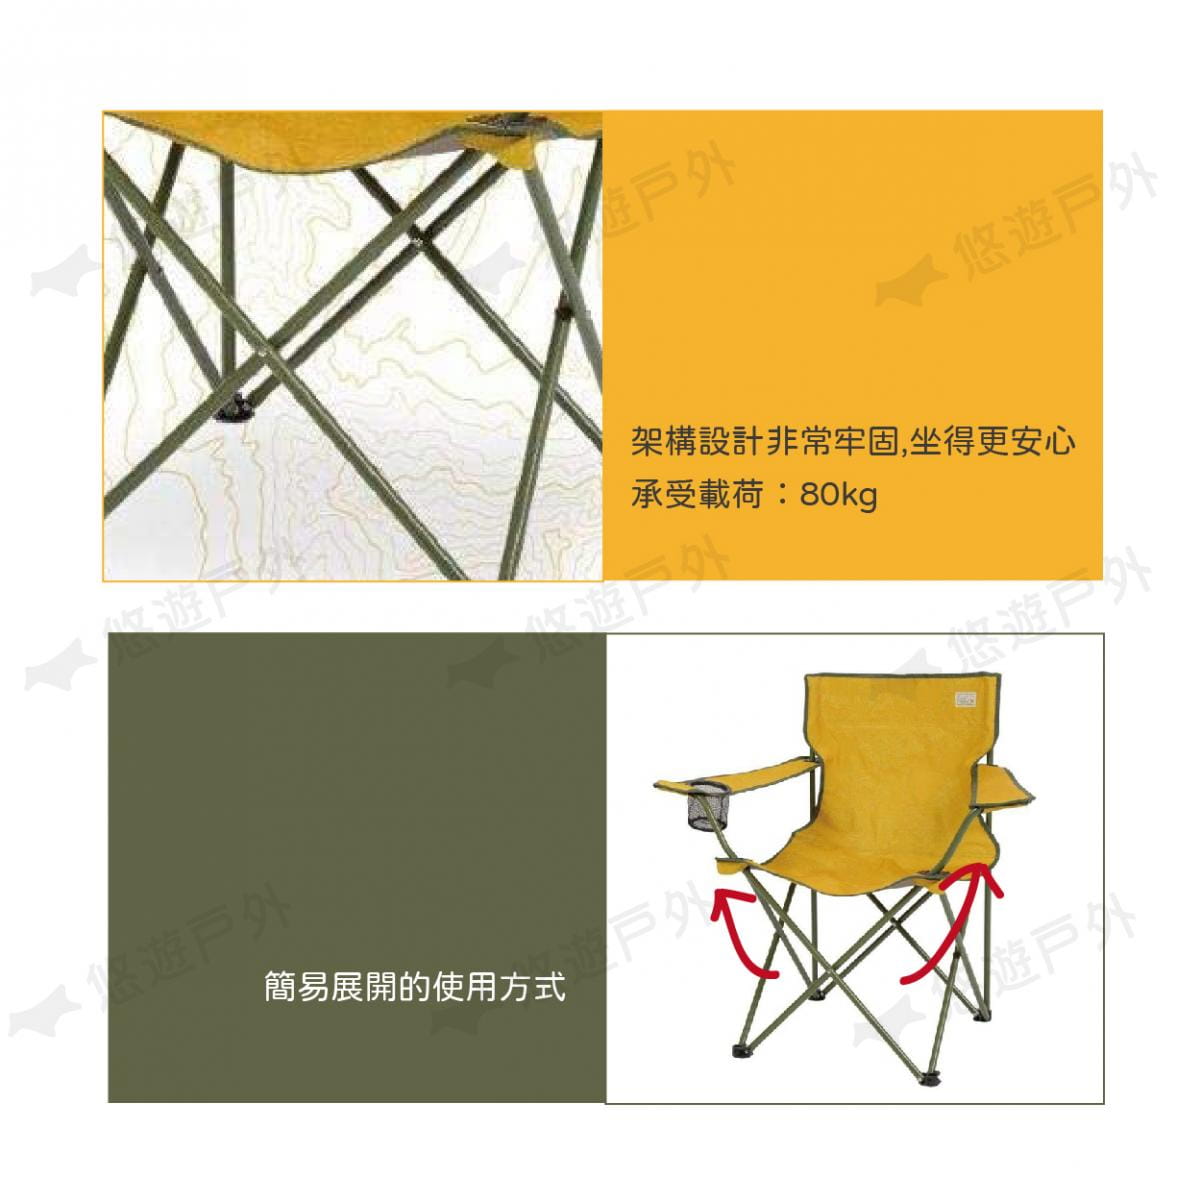 【日本鹿牌】等高線休閒椅 UC-1805 露營椅 休閒椅 摺疊椅 便攜椅 單人 釣魚 居家 露營 2